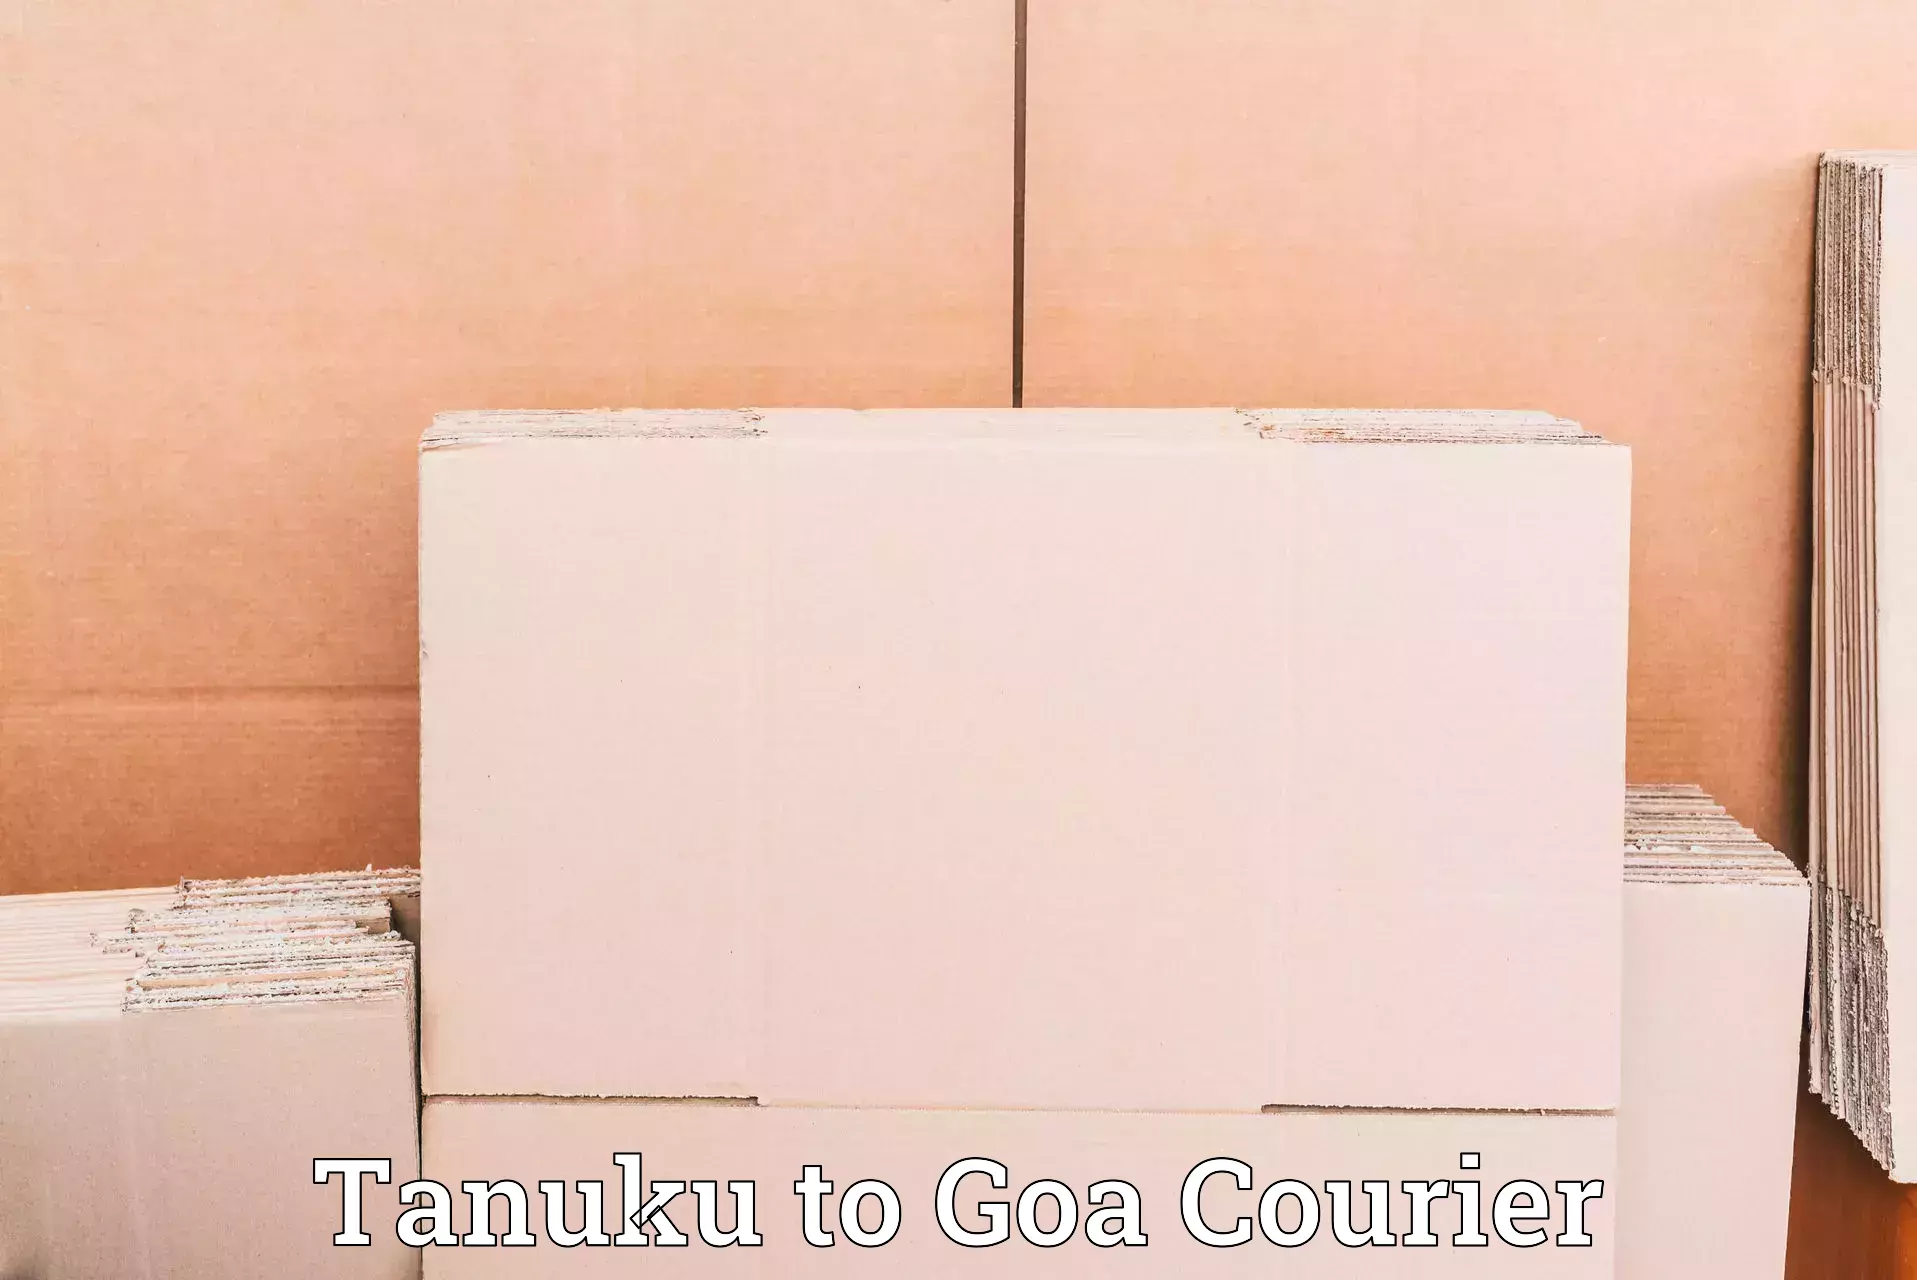 International shipping rates Tanuku to Goa